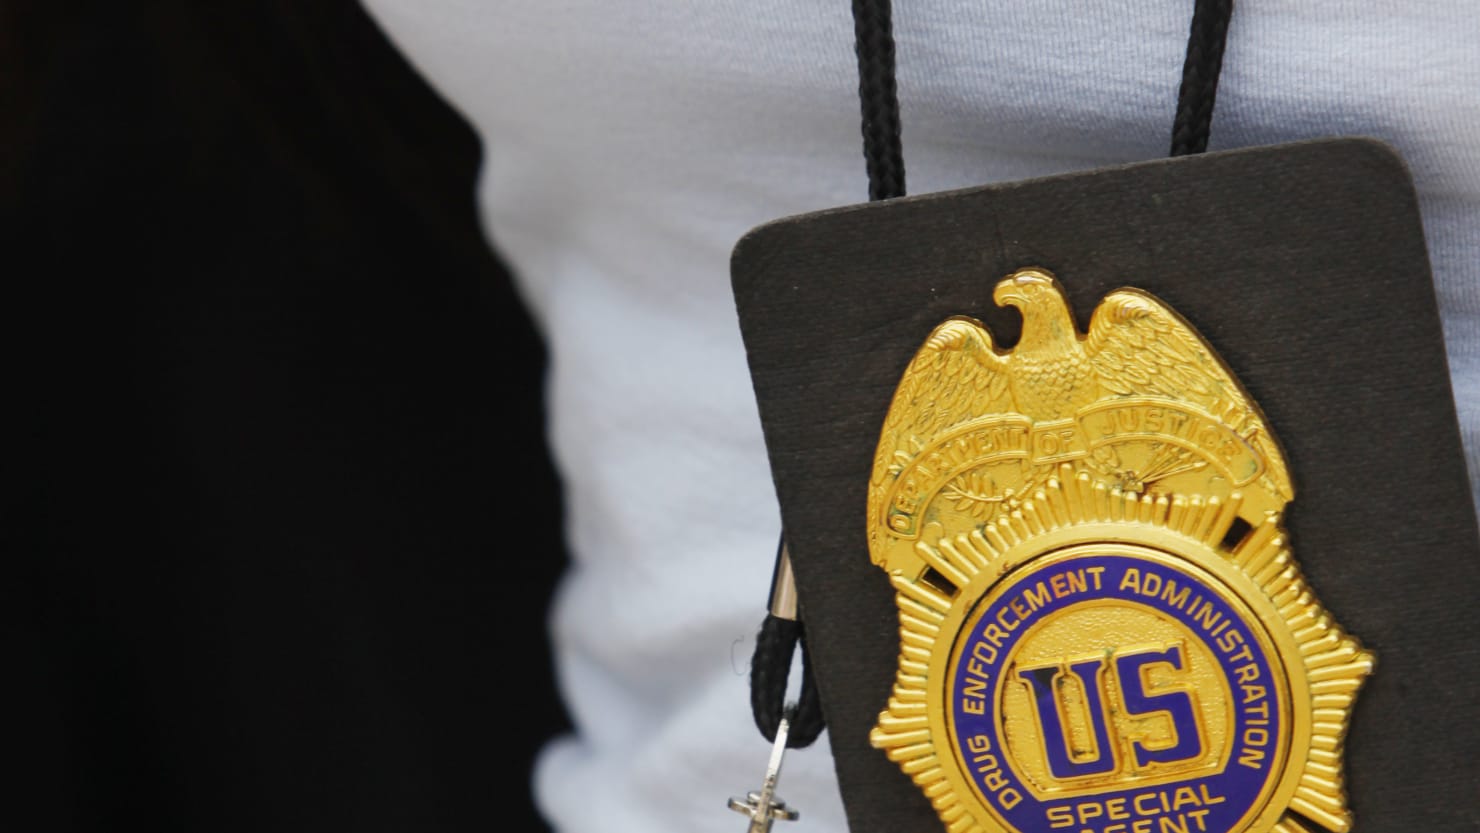 Un impostor de la DEA “engañó” a una mujer para que participara en un falso programa de formación, según los federales